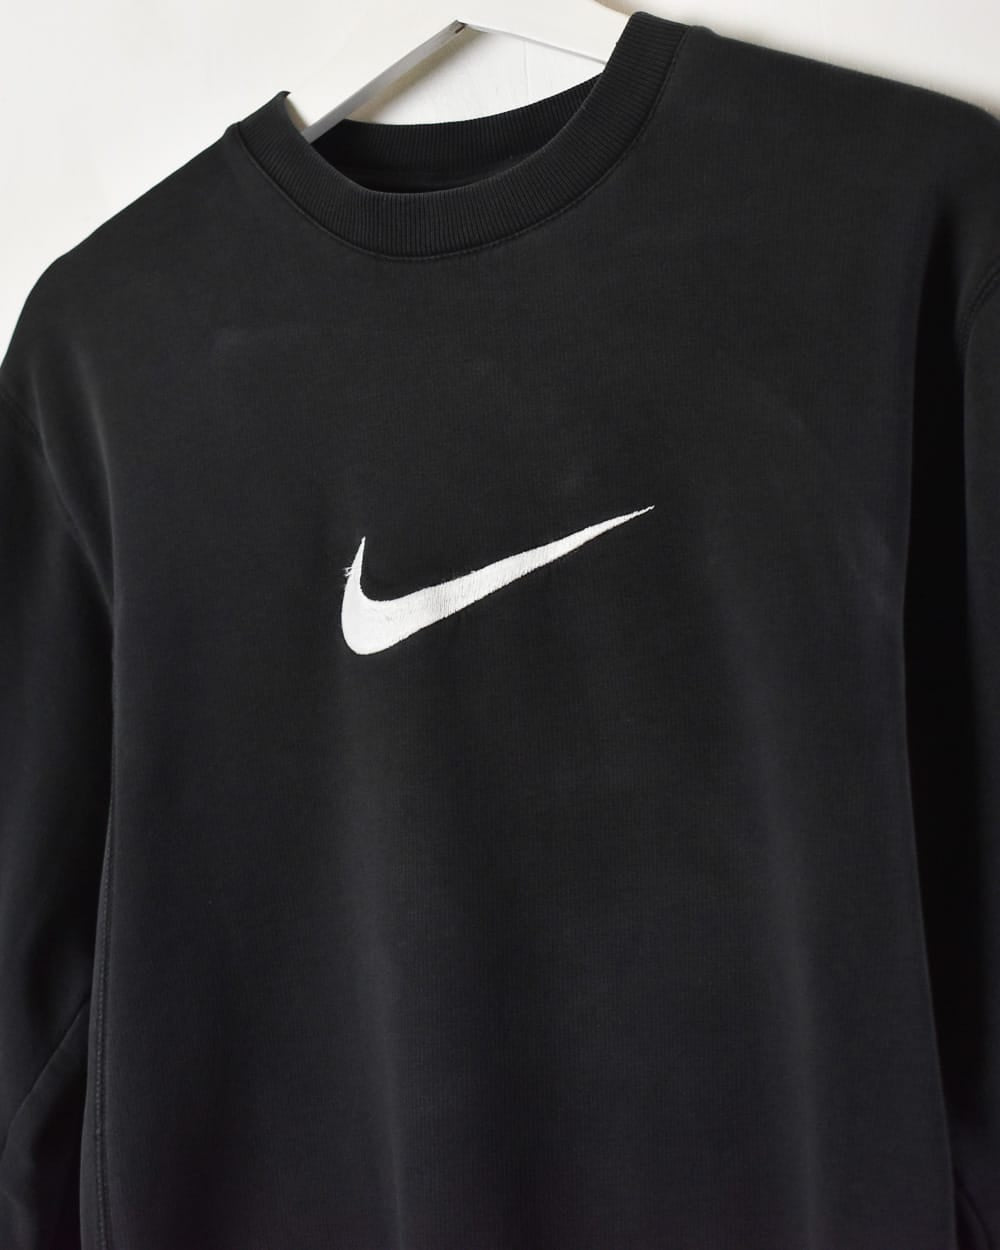 Black Nike Sweatshirt - X-Small